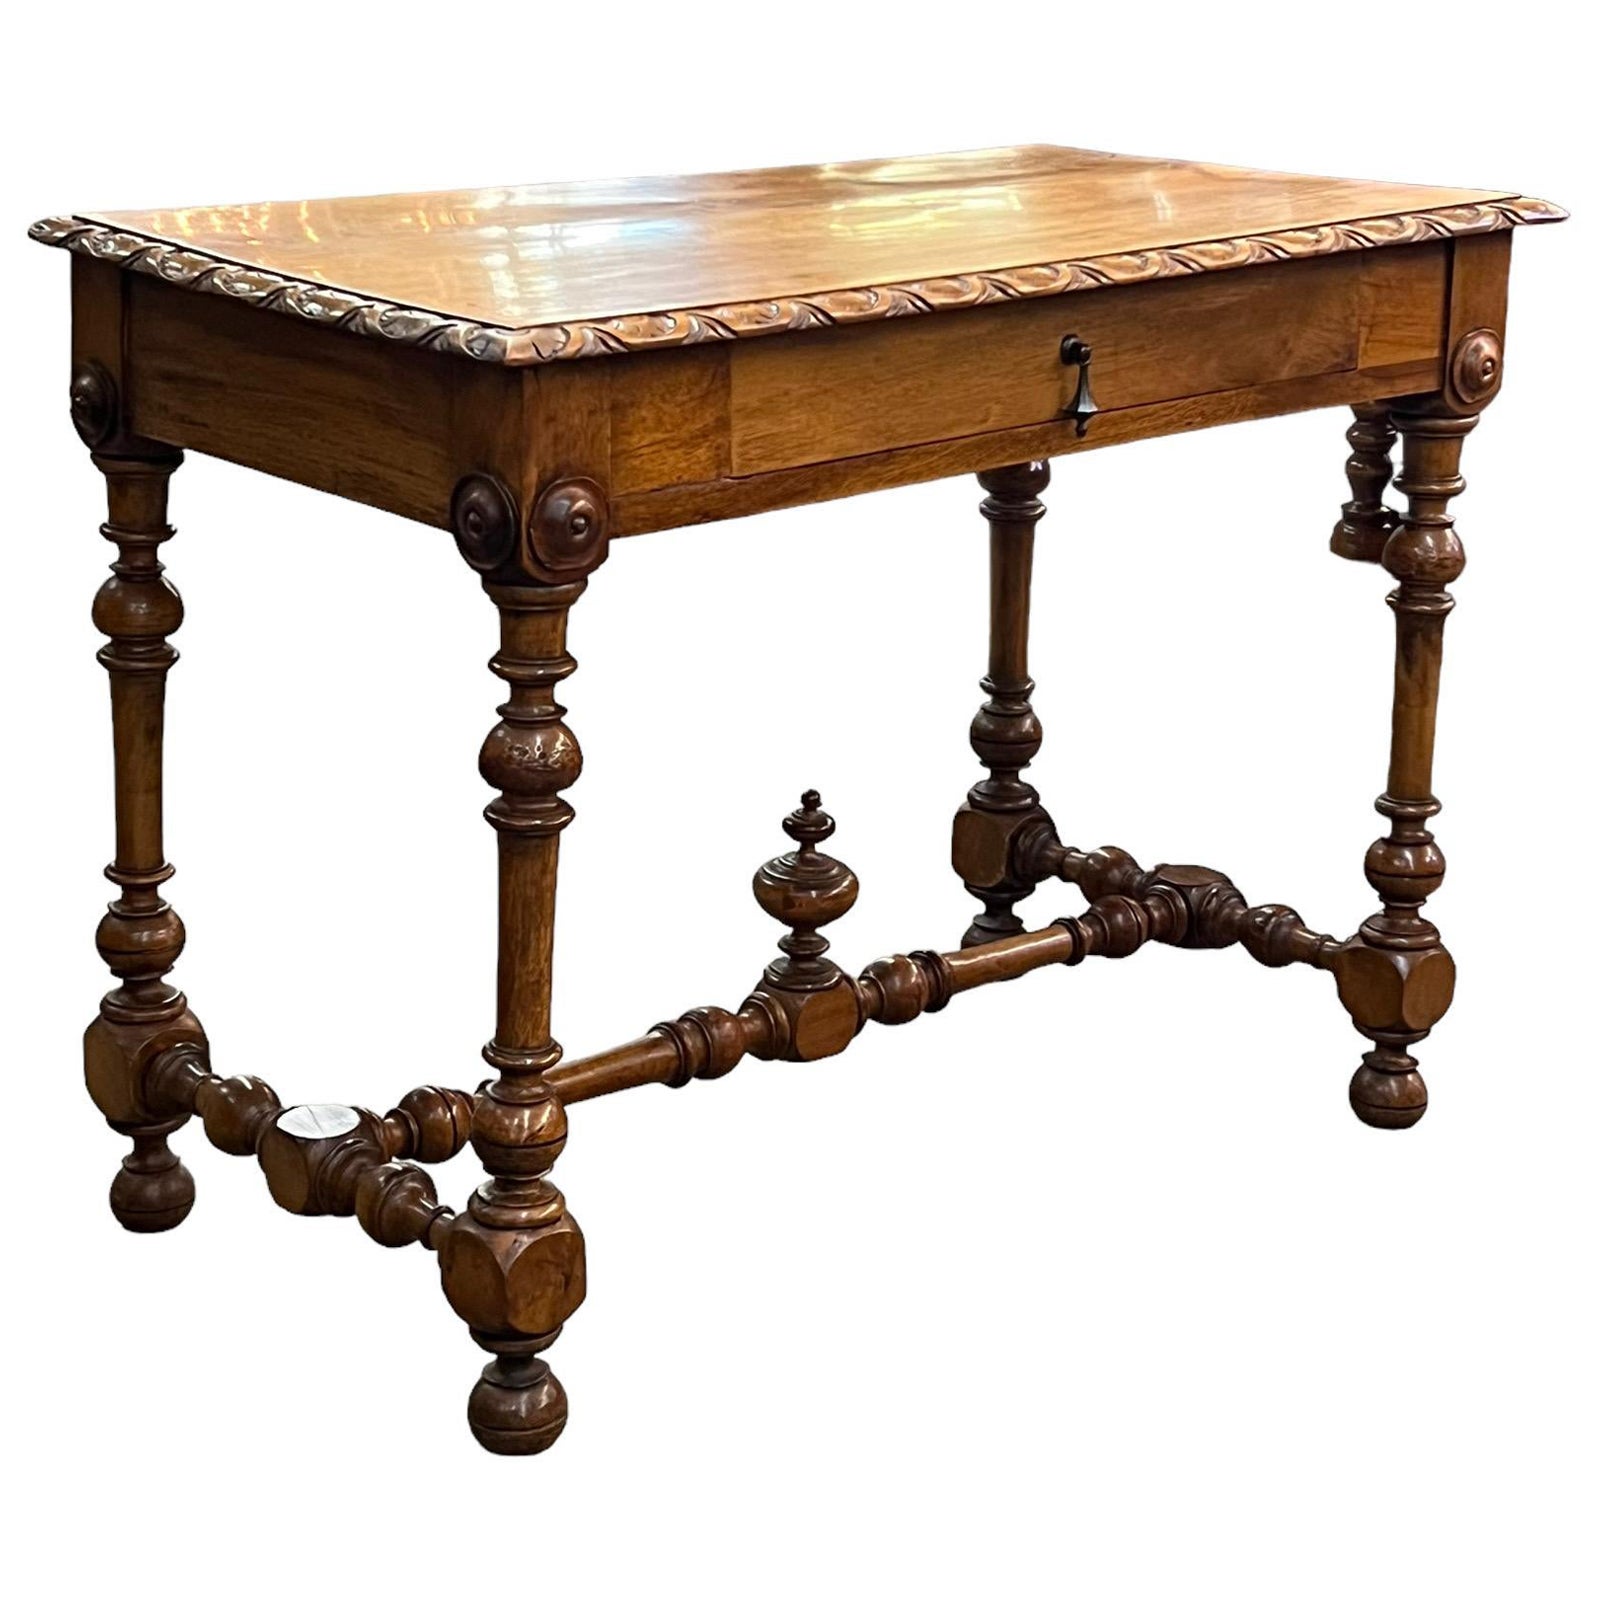 Console ou table à écrire de style baroque français du 19ème siècle en bois fruitier